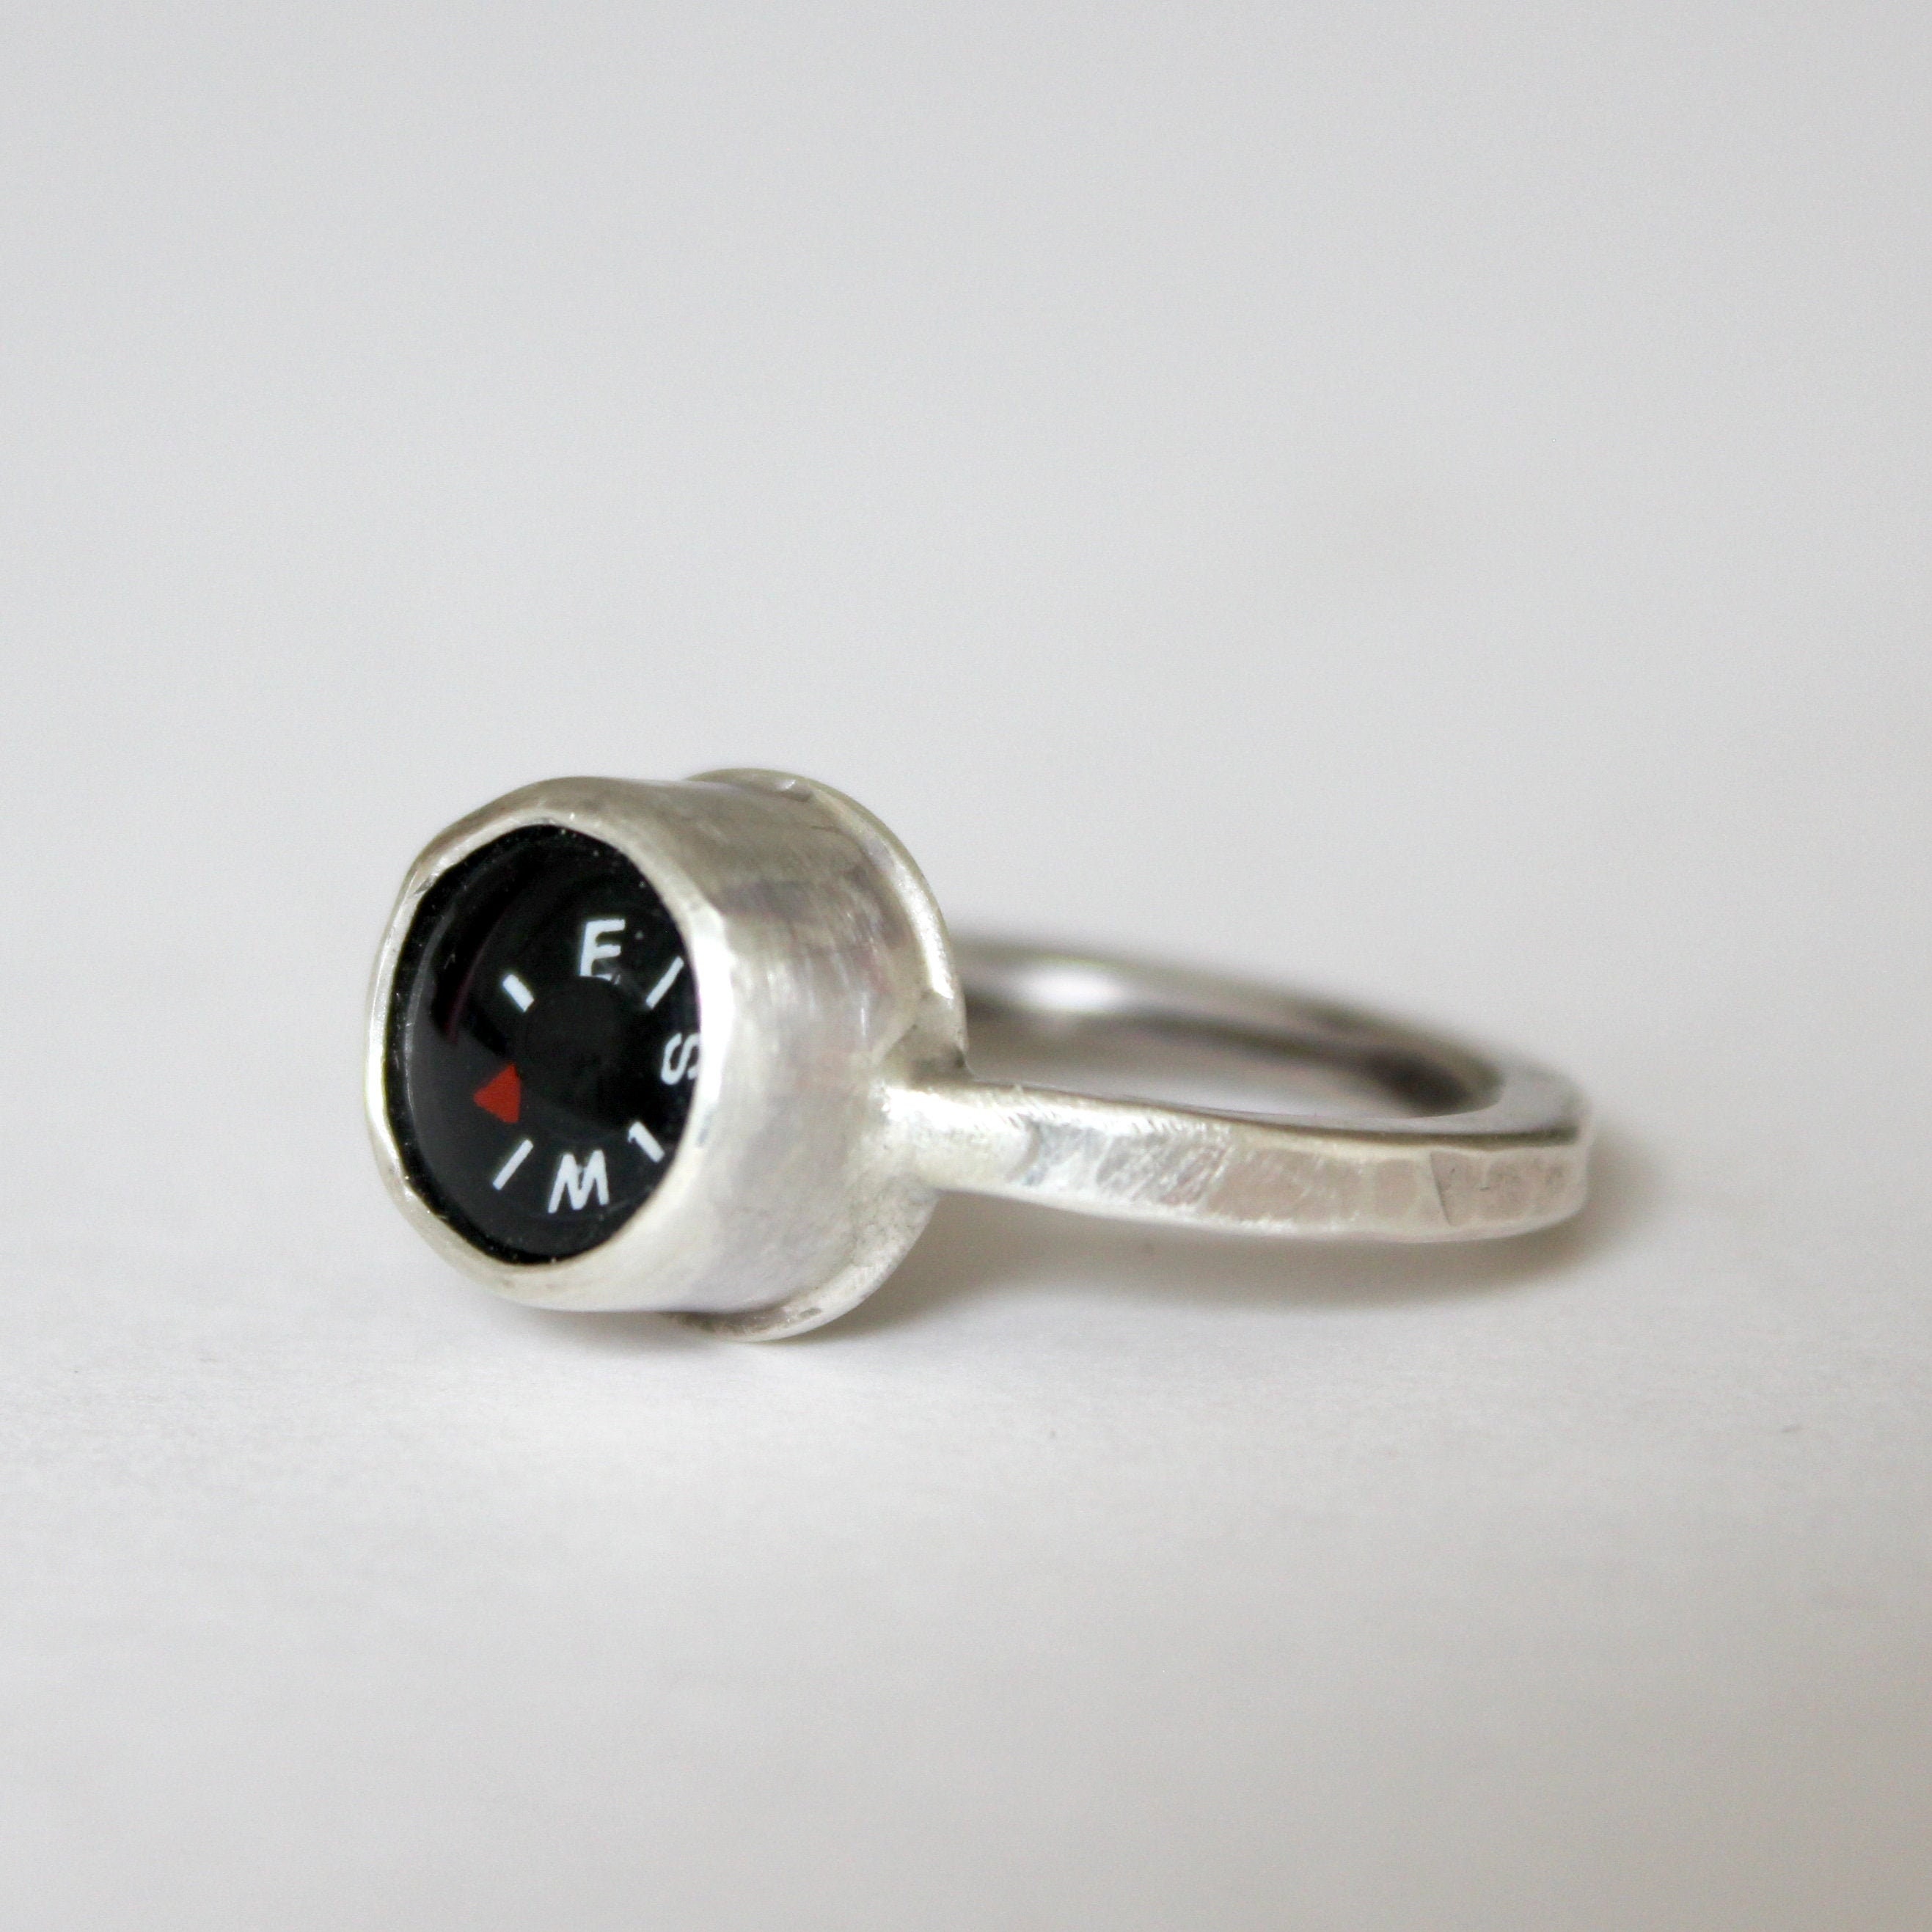 Кольцо компаса. Дэвид Юрман кольцо. Серебряное кольцо компас.